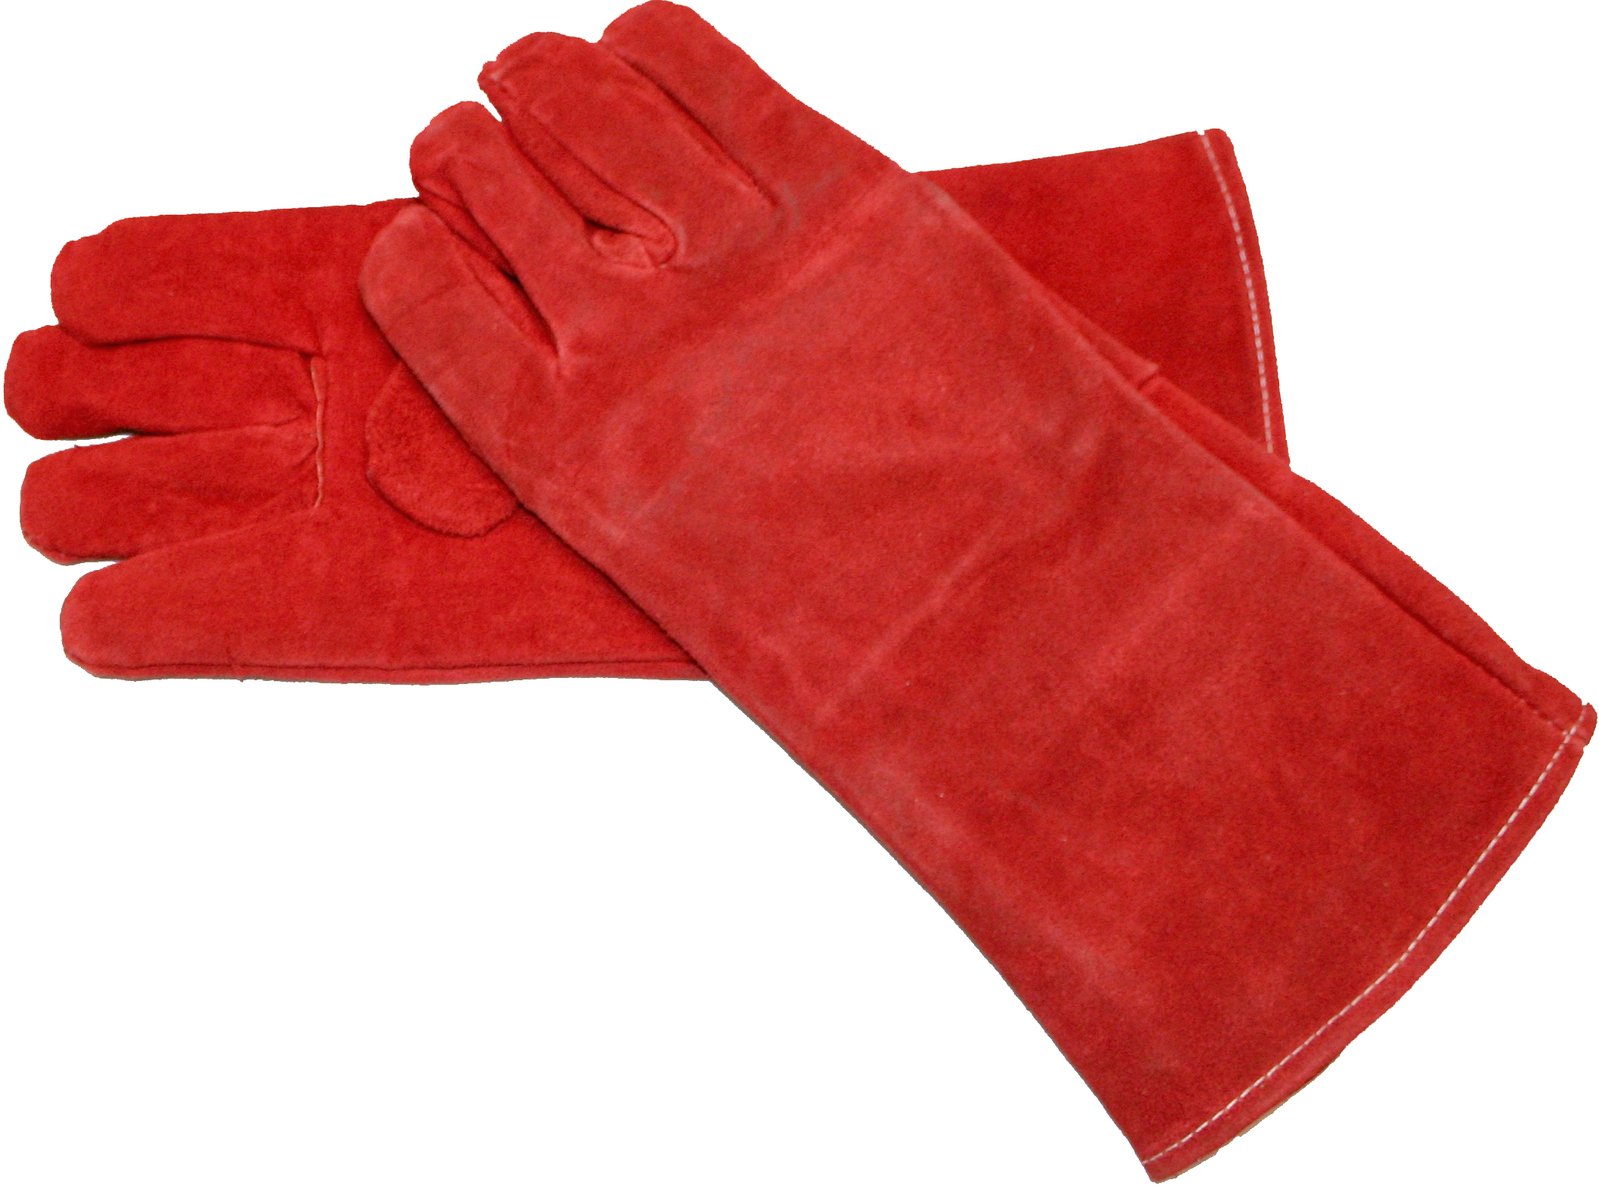 comment nettoyer des gants en cuir délicat?